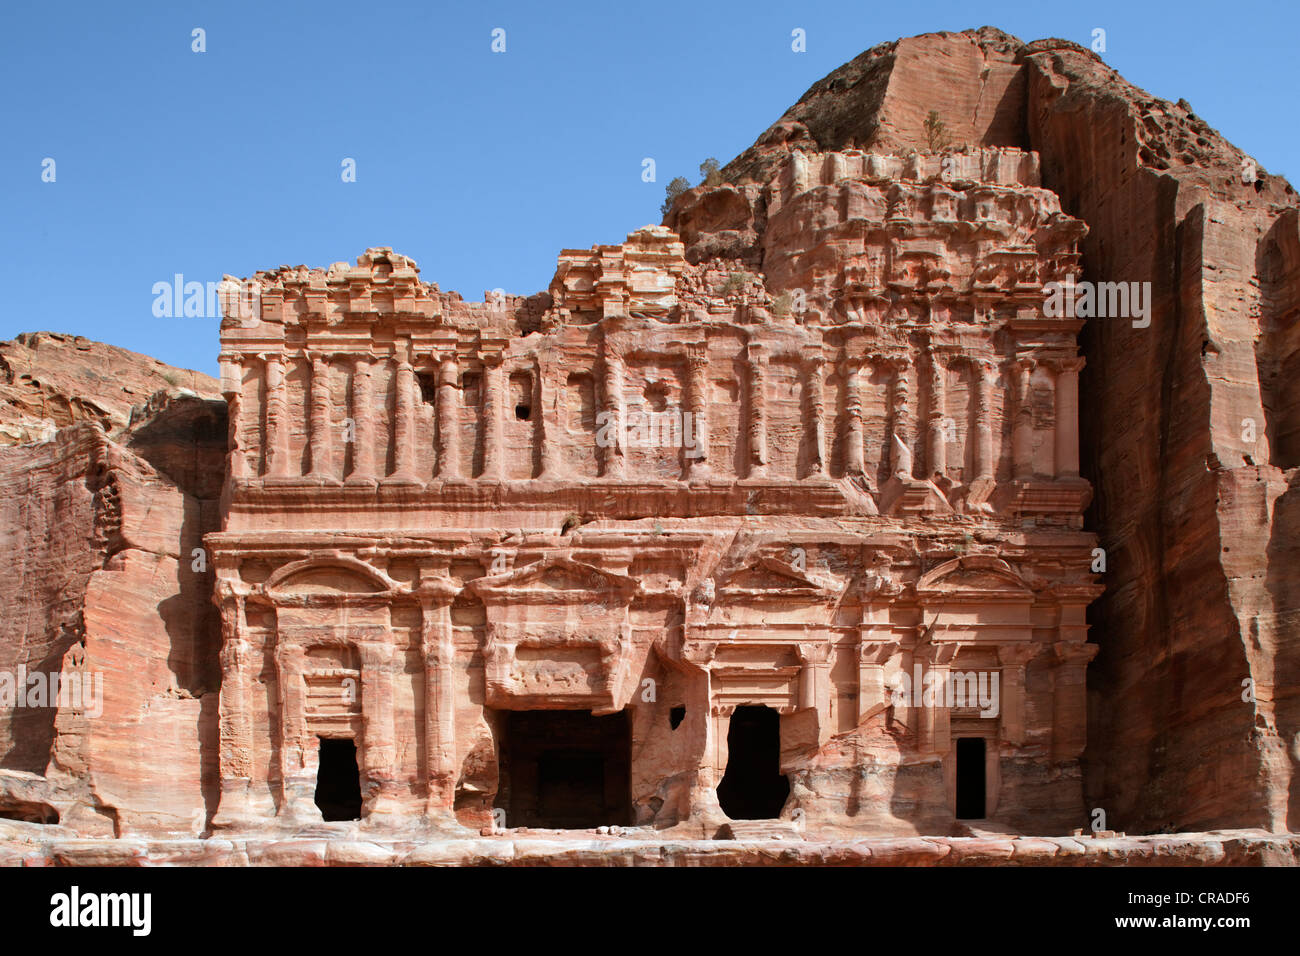 Palace tombe, avec pilastres, colonnes engagées, Pétra, capitale des Nabatéens, rock city, monde de l'UNESCO Site Hertage Banque D'Images